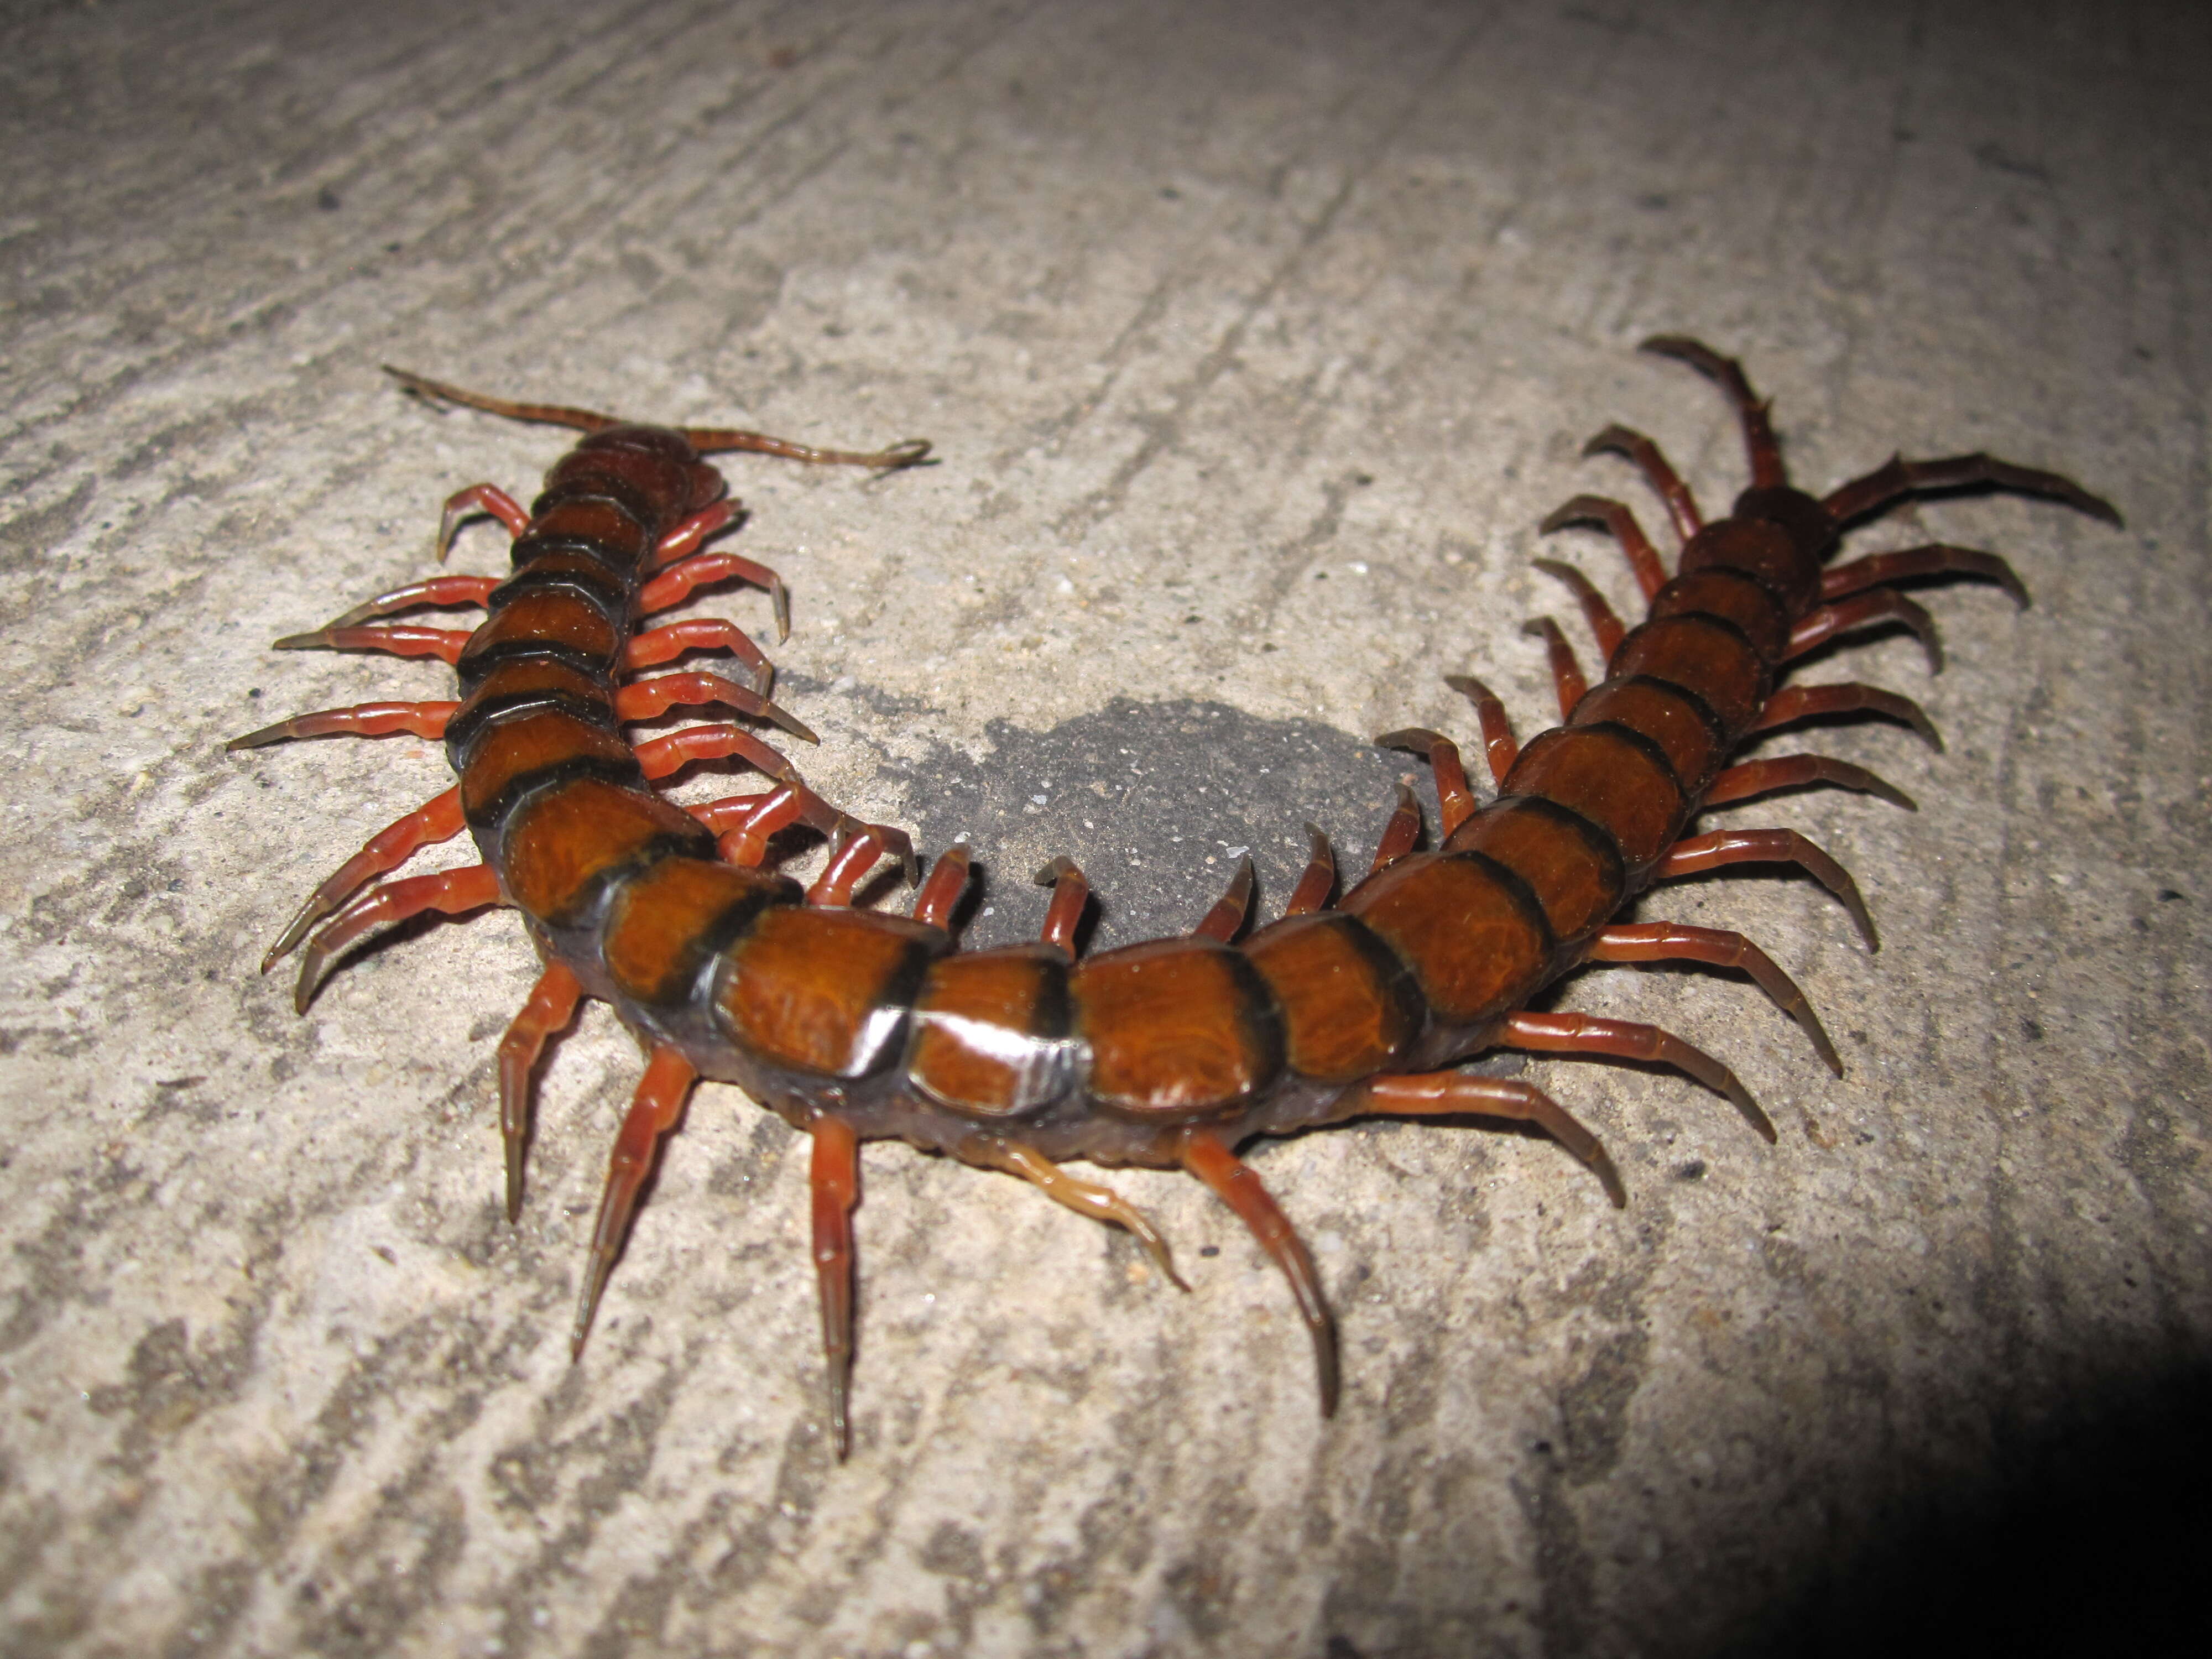 Image of Amazonian giant centipede